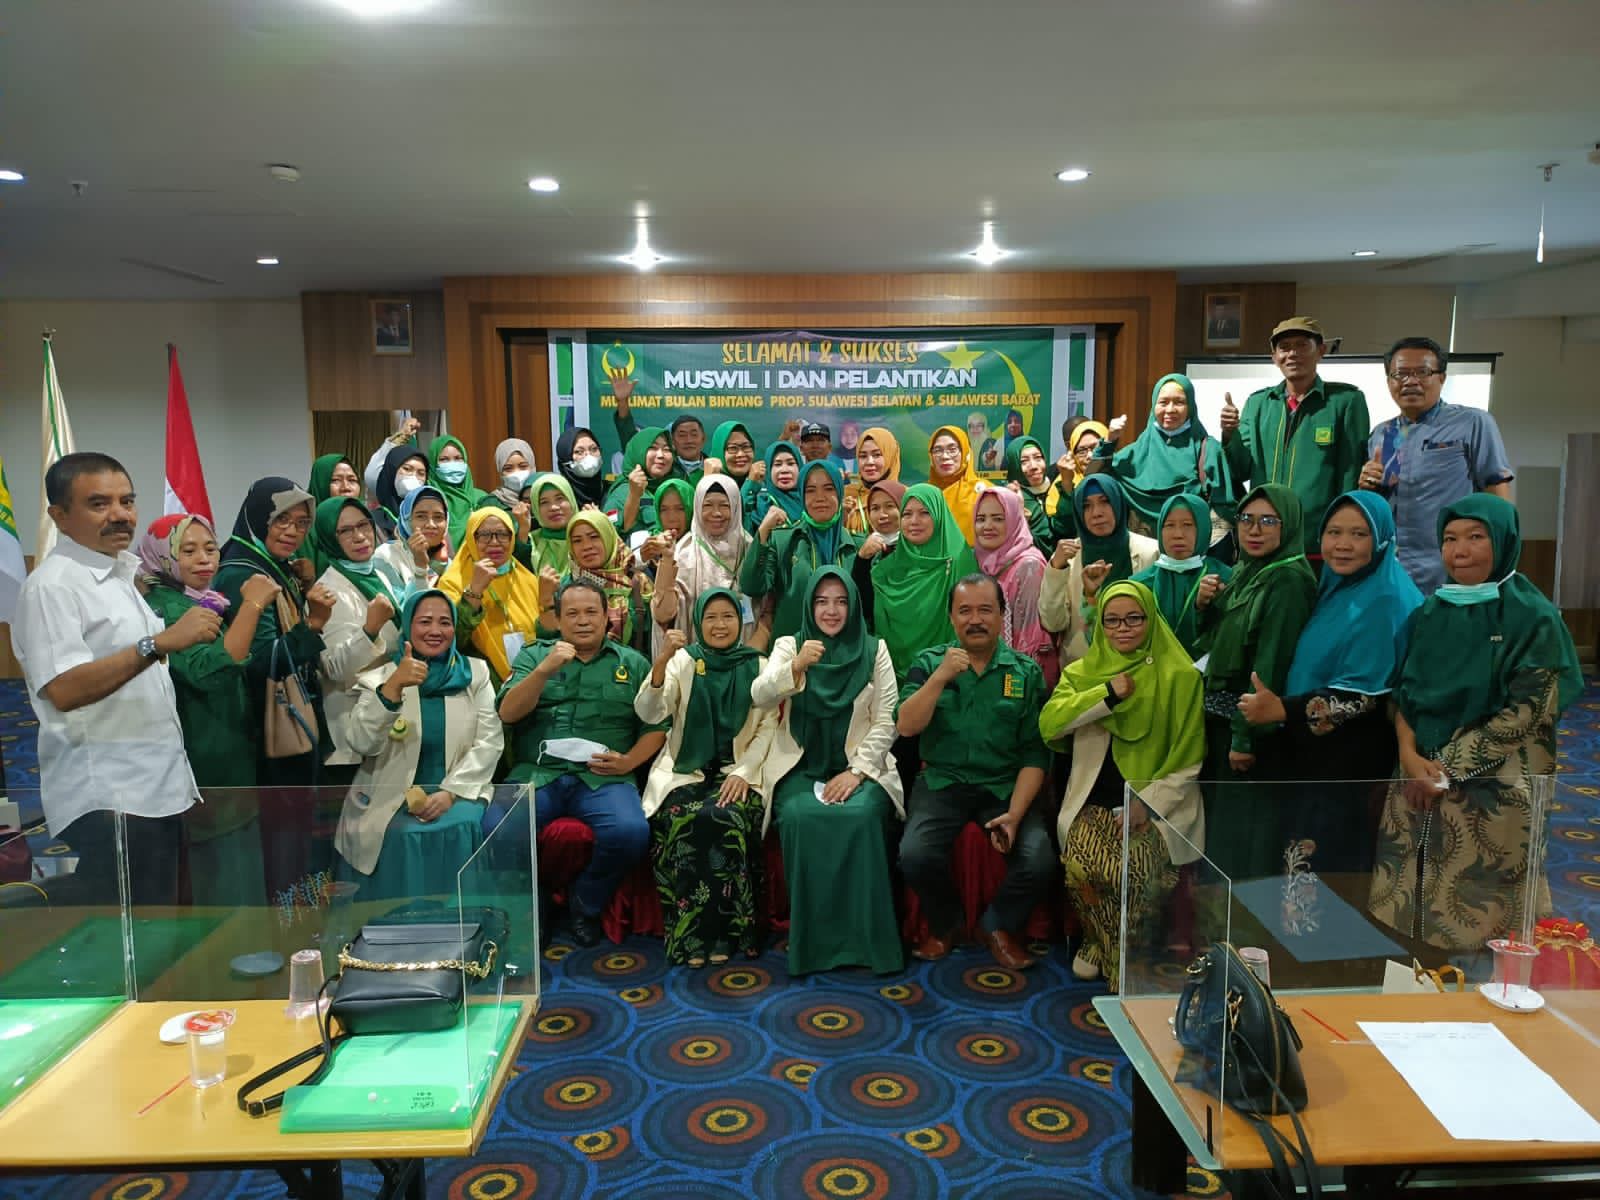 Ketua PW MBB Sulsel Murniati Klaim Anggota Muslimat Sudah Tersebar di Beberapa Organisasi Perempuan